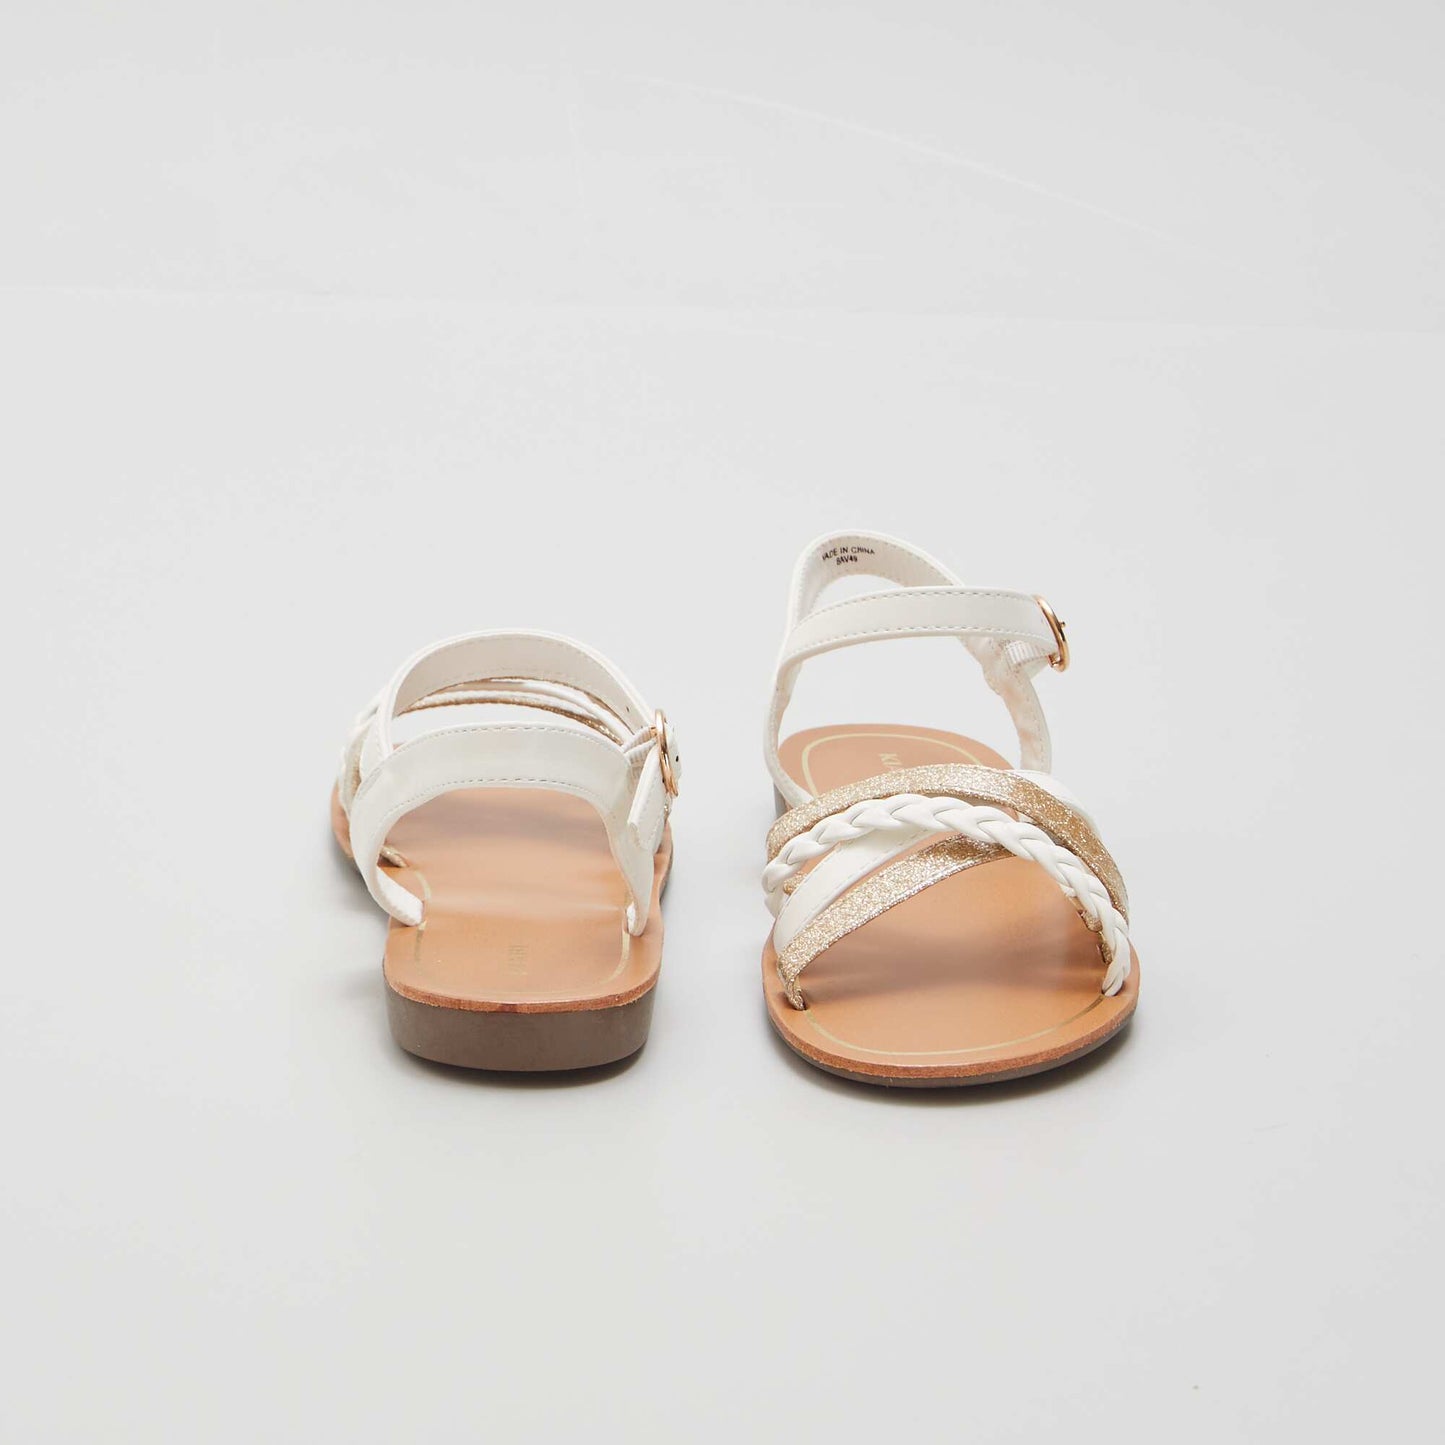 Multi-strap sandals white